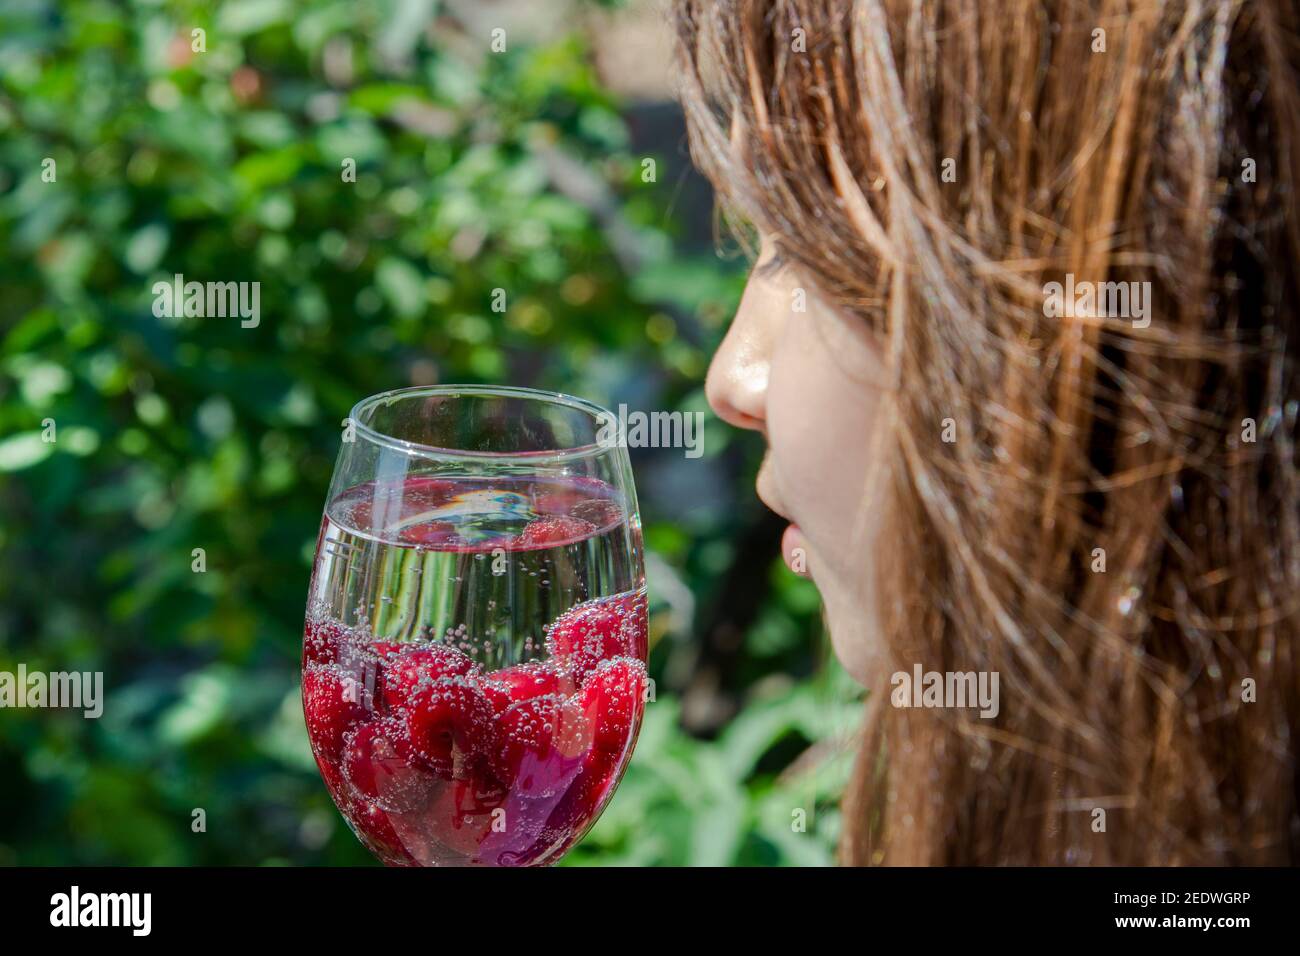 Une fille aux cheveux longs tient un verre de fizzy buvez et des baies de cerises mûres rouges avec un mélange de fizzy buvez sur le fond du feuillage vert de Banque D'Images